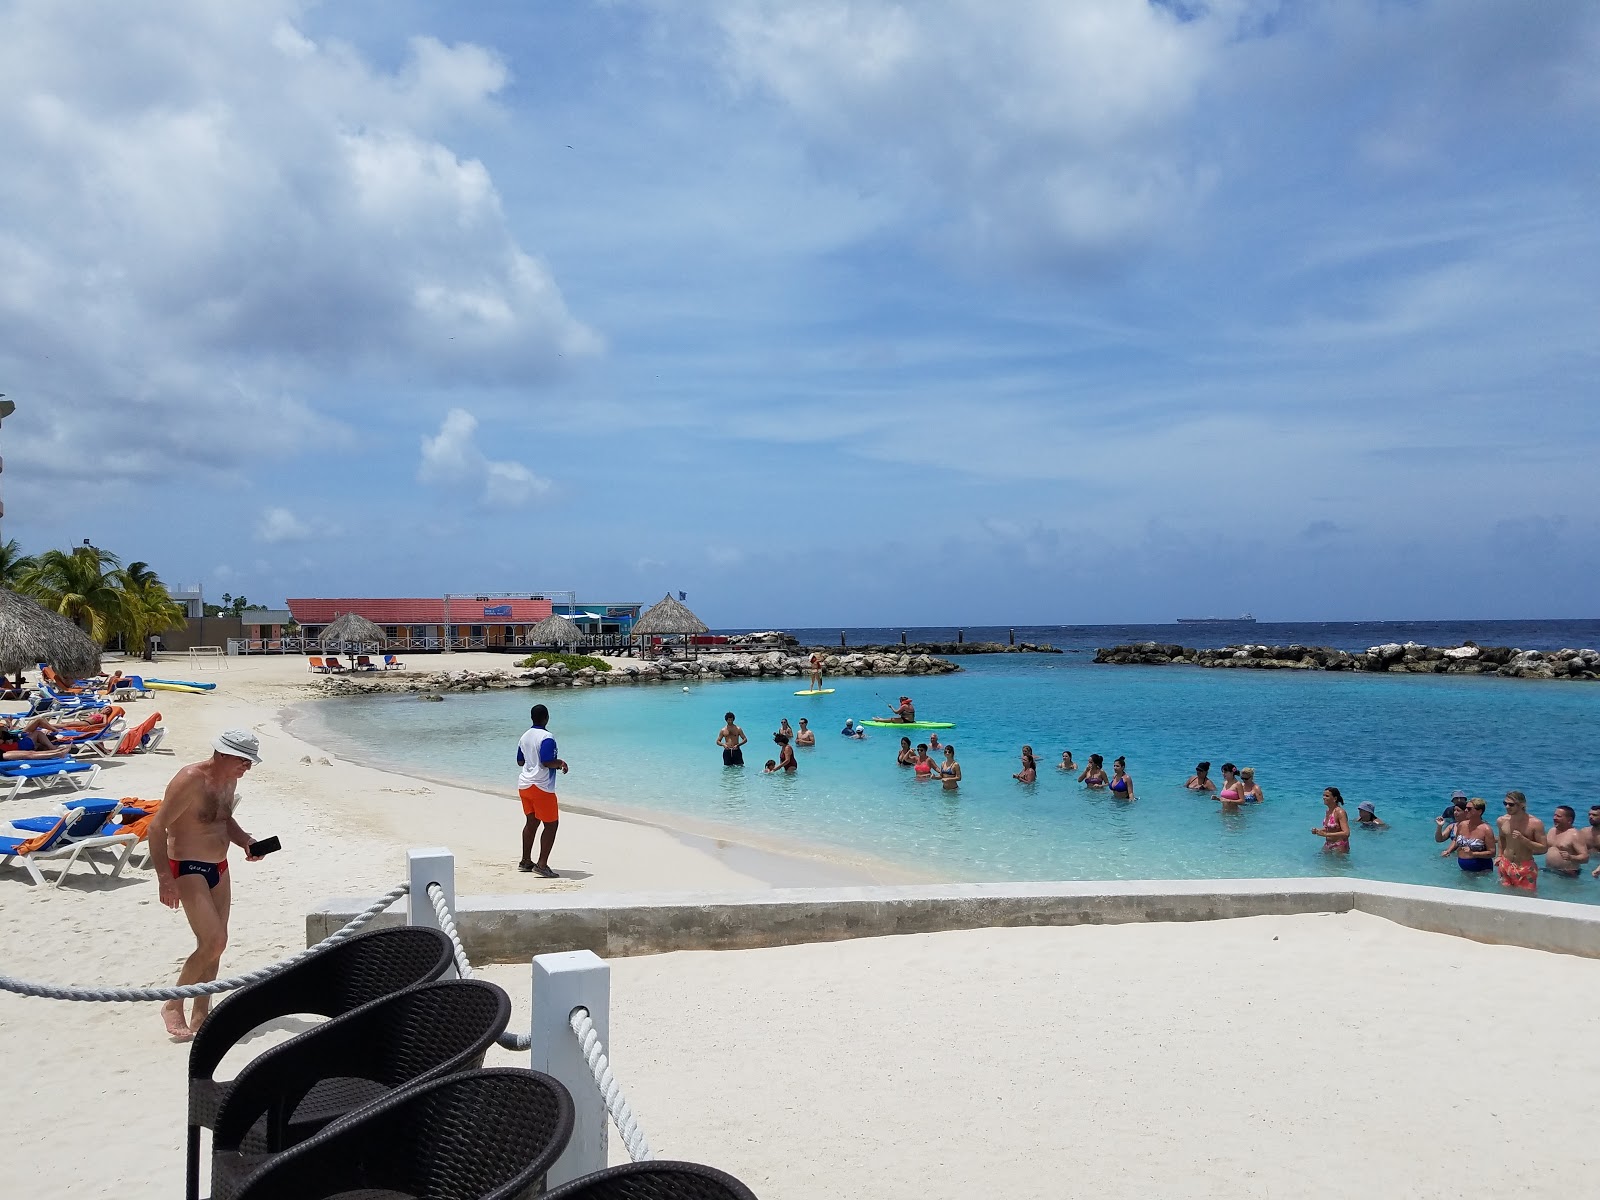 Fotografie cu Sunscape Curacao cu o suprafață de nisip fin strălucitor